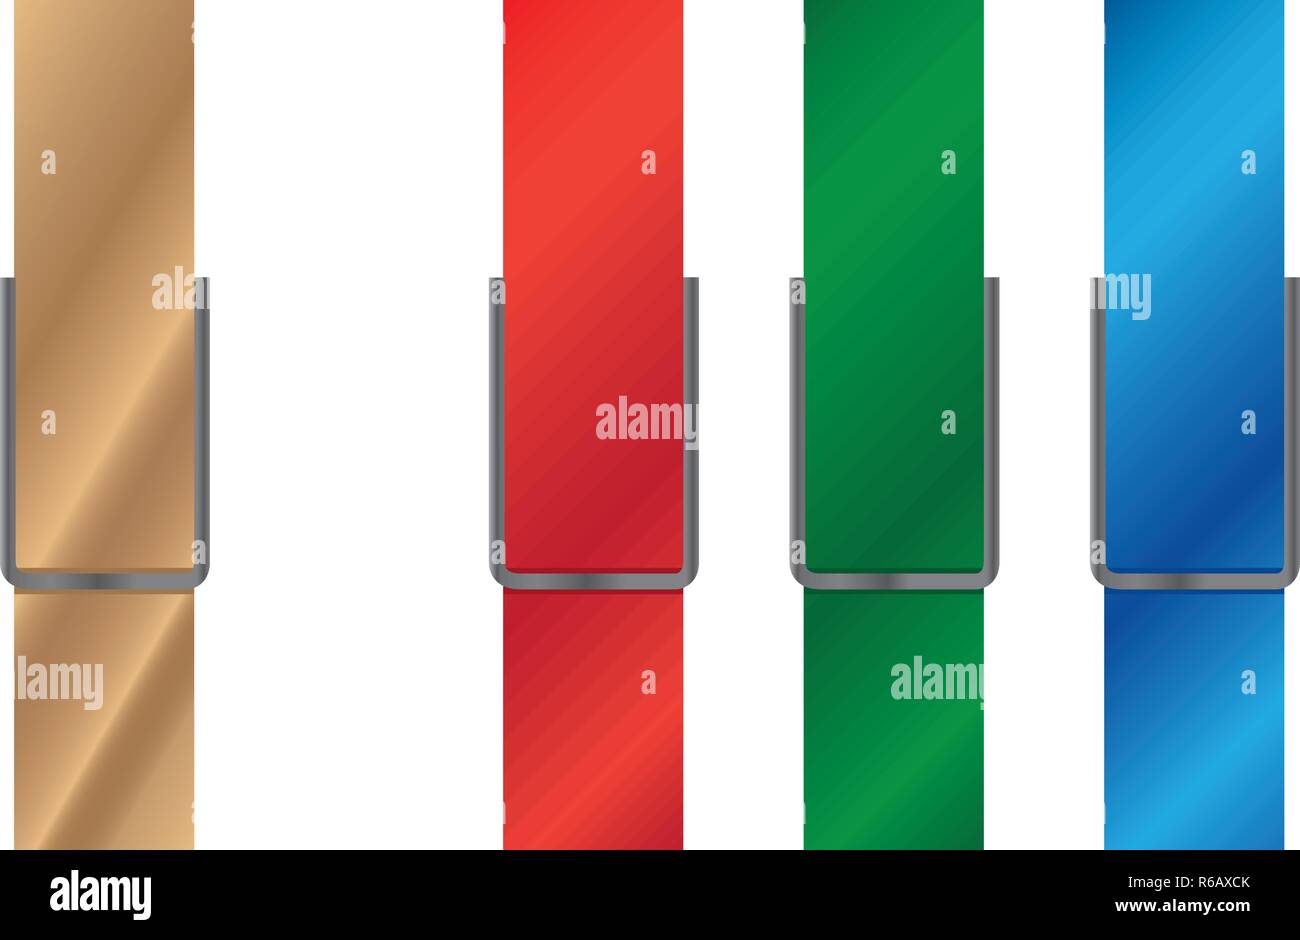 Vector illustration de sol en bois et des pinces à linge en plastique multicolore, rouge, bleu, vert, isolé sur fond blanc Illustration de Vecteur